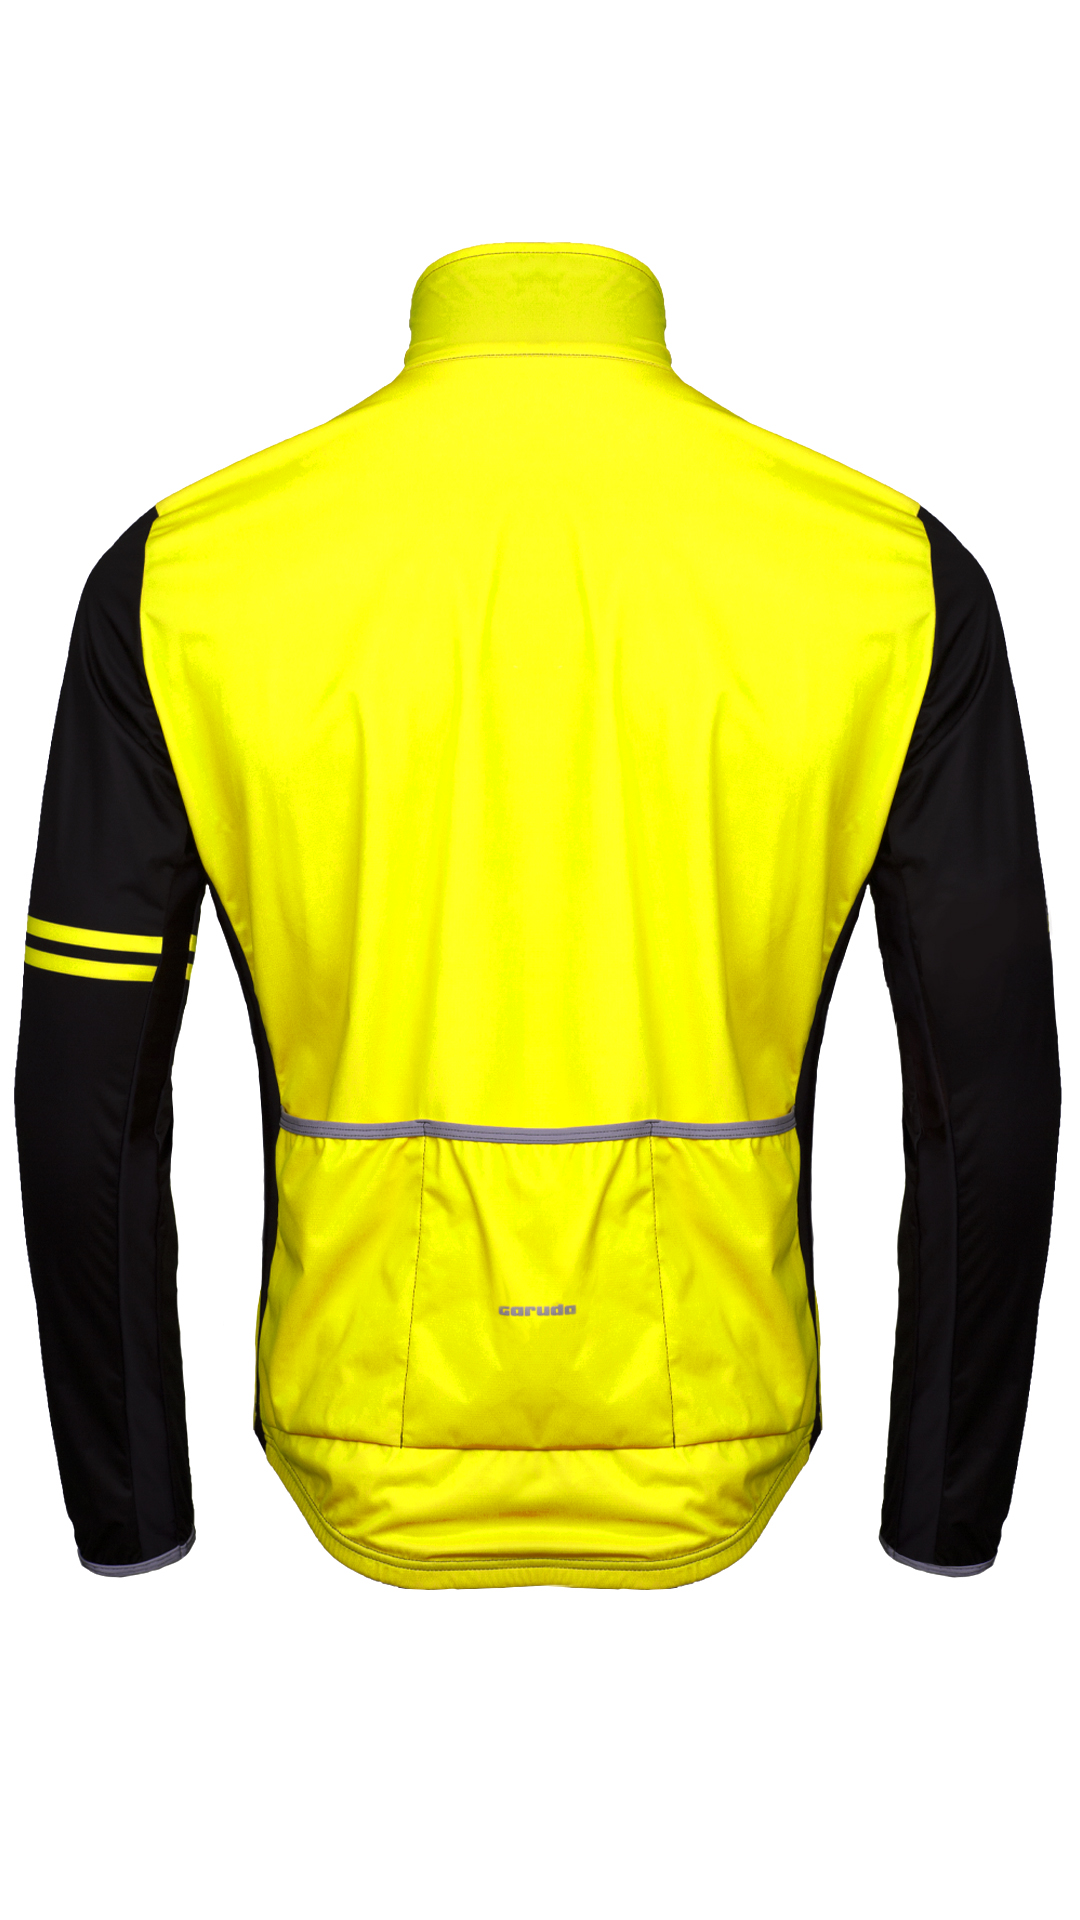 Veste de cyclisme coupe-vent jaune fluo